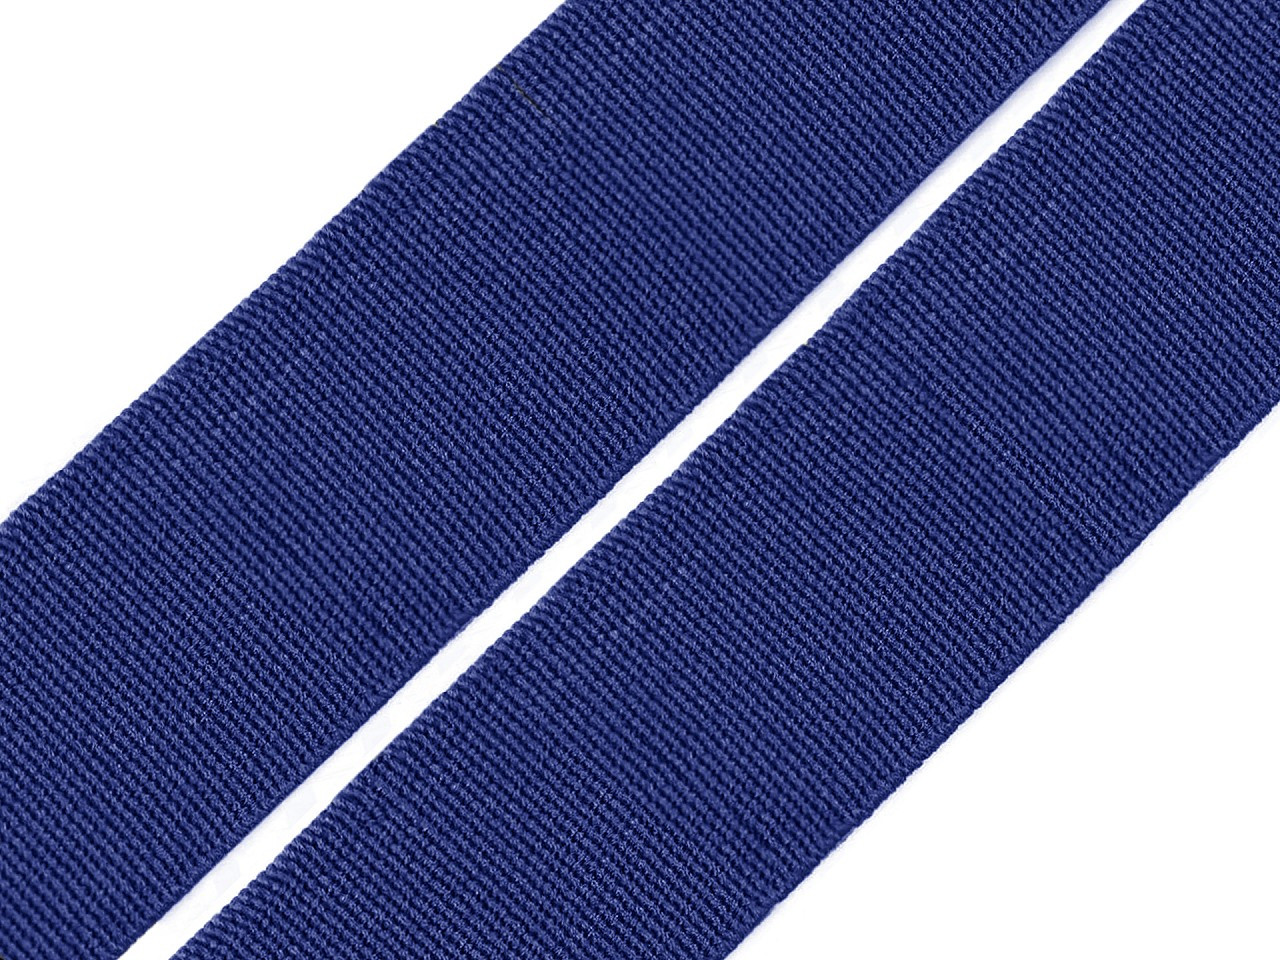 Pruženka hladká šíře 20 mm tkaná barevná, barva 7701 modrá kobaltová